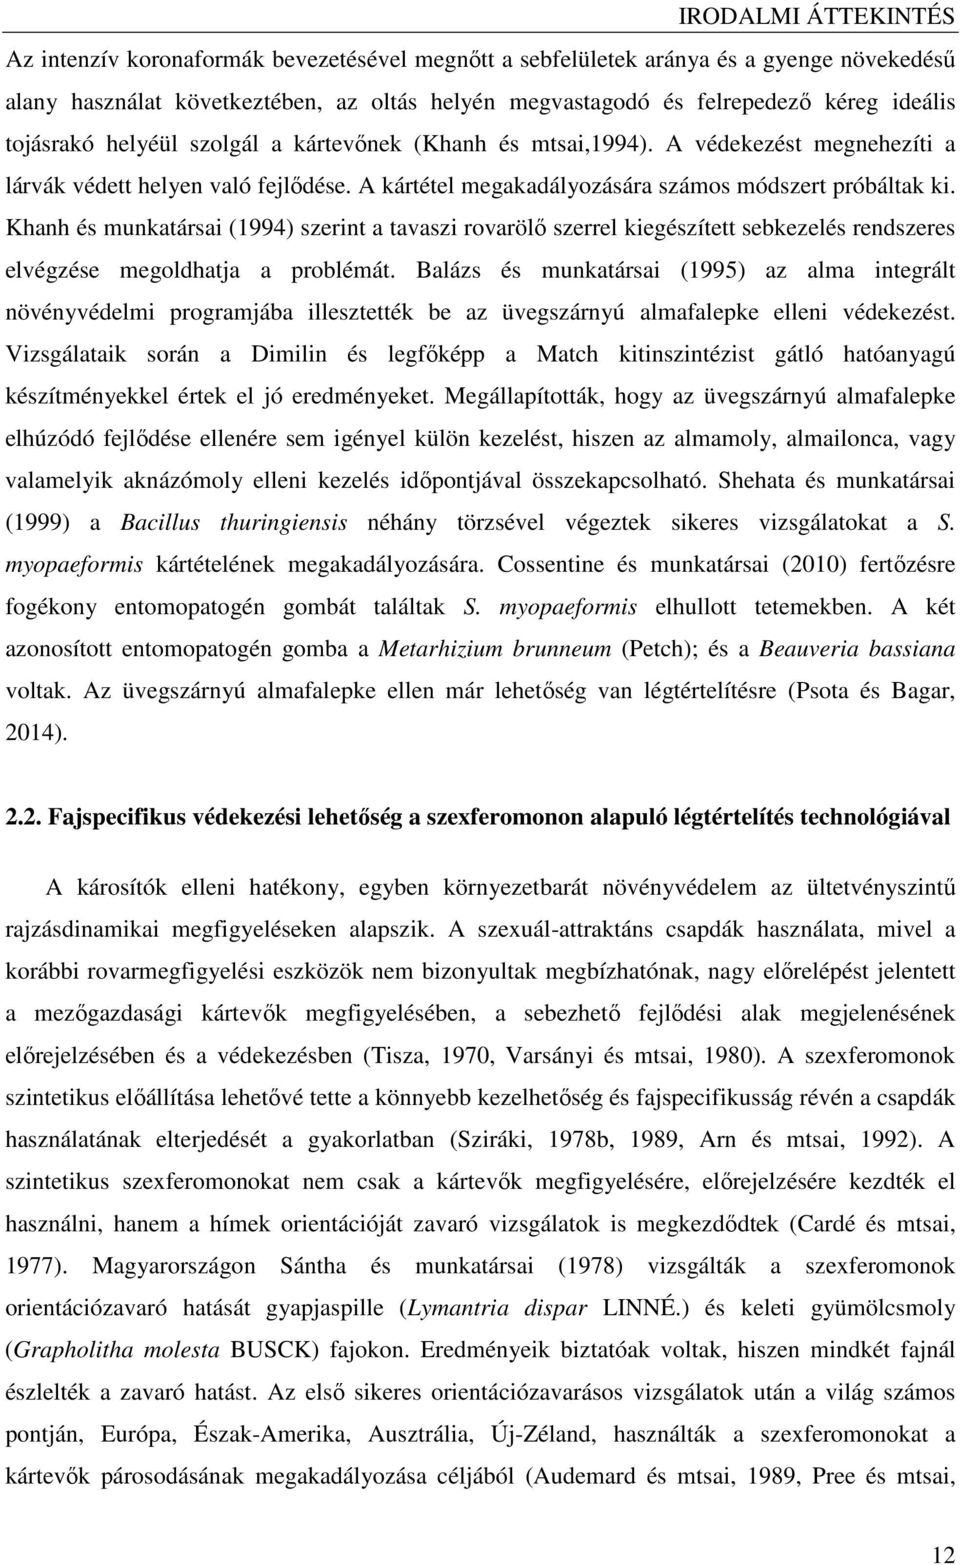 Khanh és munkatársai (1994) szerint a tavaszi rovarölı szerrel kiegészített sebkezelés rendszeres elvégzése megoldhatja a problémát.